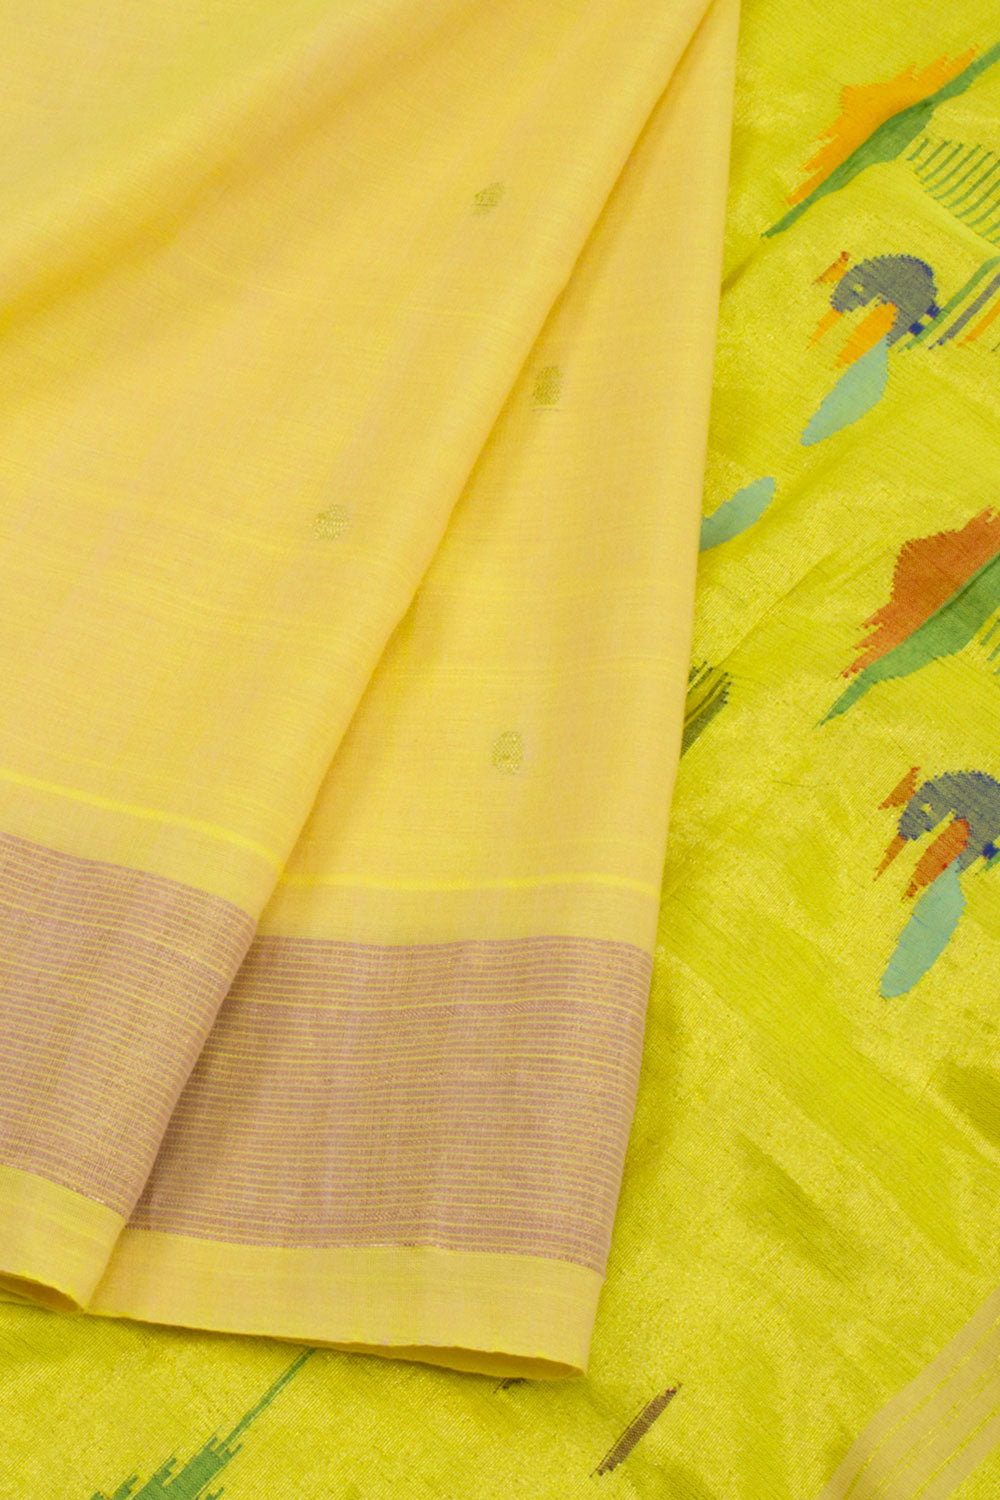 Harvest Gold Yellow Handloom Paithani Cotton Saree 10062504